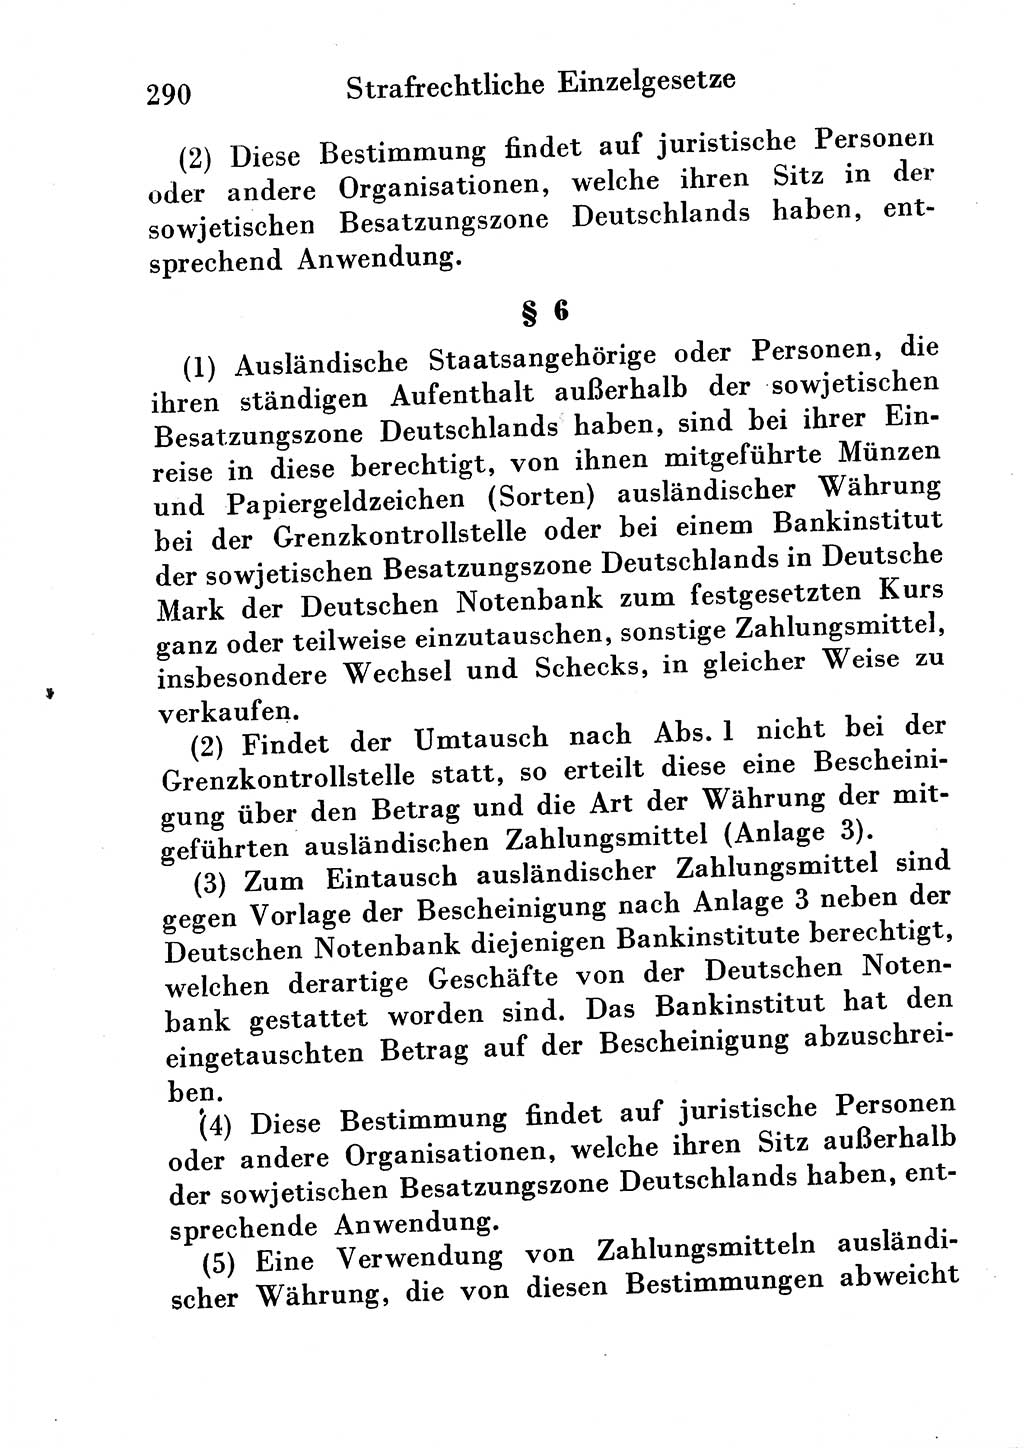 Strafgesetzbuch (StGB) und andere Strafgesetze [Deutsche Demokratische Republik (DDR)] 1954, Seite 290 (StGB Strafges. DDR 1954, S. 290)